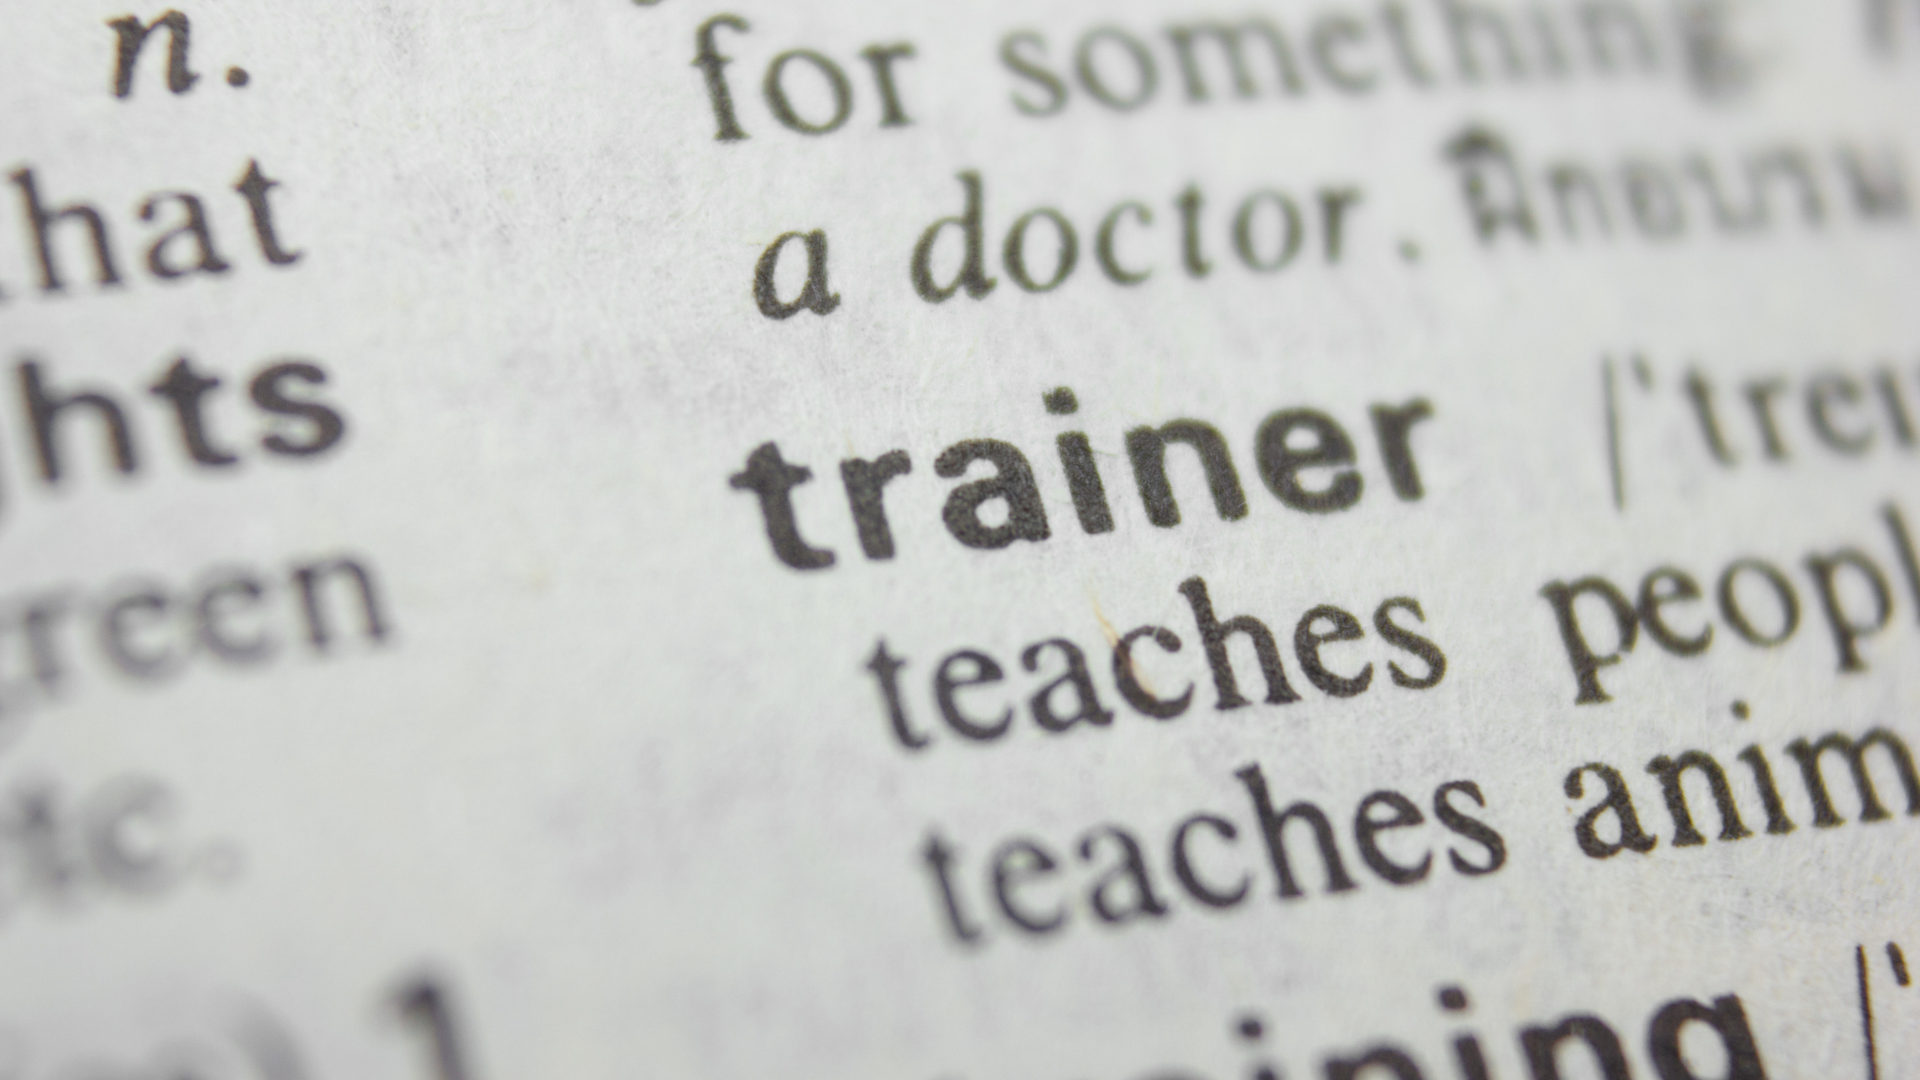 personel trainer tanımlaması ile ilgili bir sözlükten çekilmiş görsel.